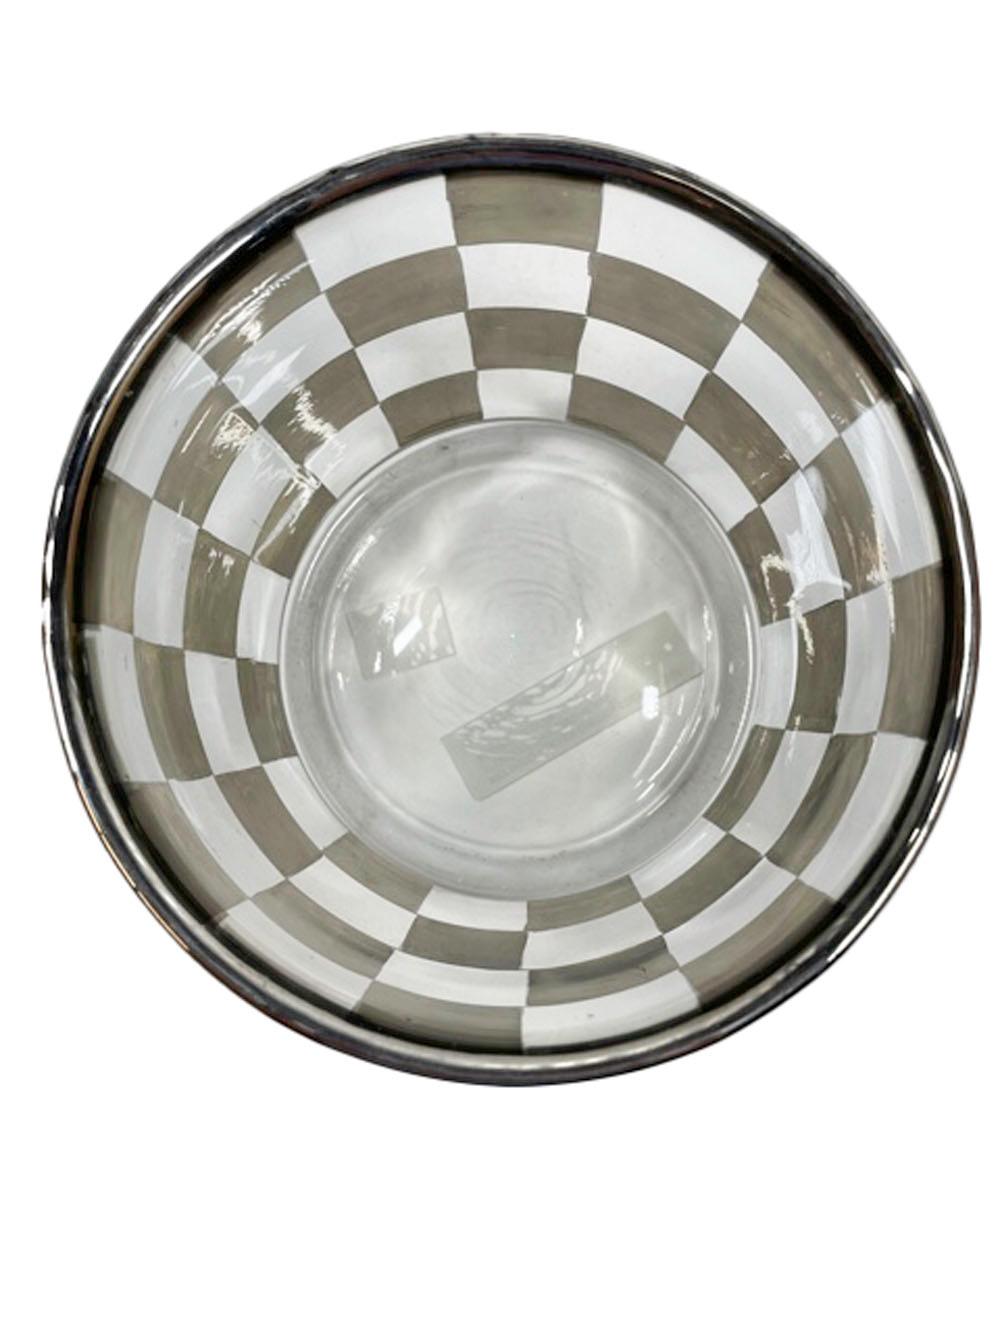 Cocktail-Set im Art-déco-Stil mit Silberkaro-Muster auf geripptem optischem Glas 1